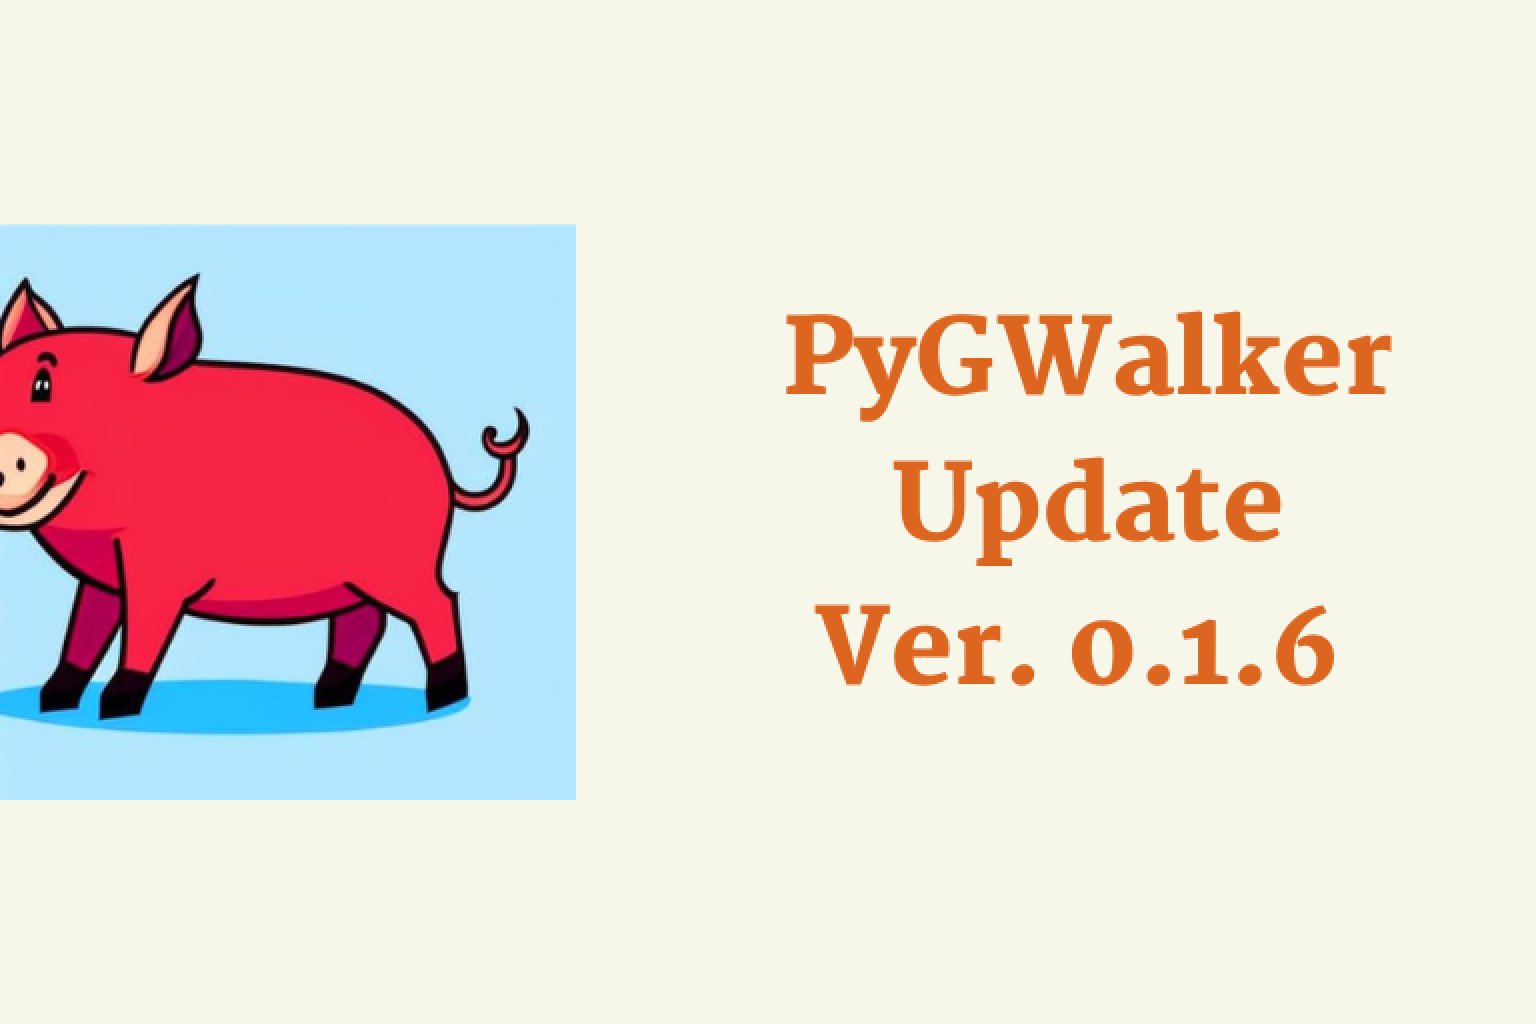 0.1.6을 사용했을 때요.PygWalker용 릴리스에서는 Tableau와 유사한 인터페이스를 통해 Pandas 또는 Polars 데이터 프레임을 데이터 시각화로 쉽게 전환하고 시각화를 코드로 내보낼 수 있습니다.언제든지 코드를 PygWalker로 다시 가져올 수도 있습니다!